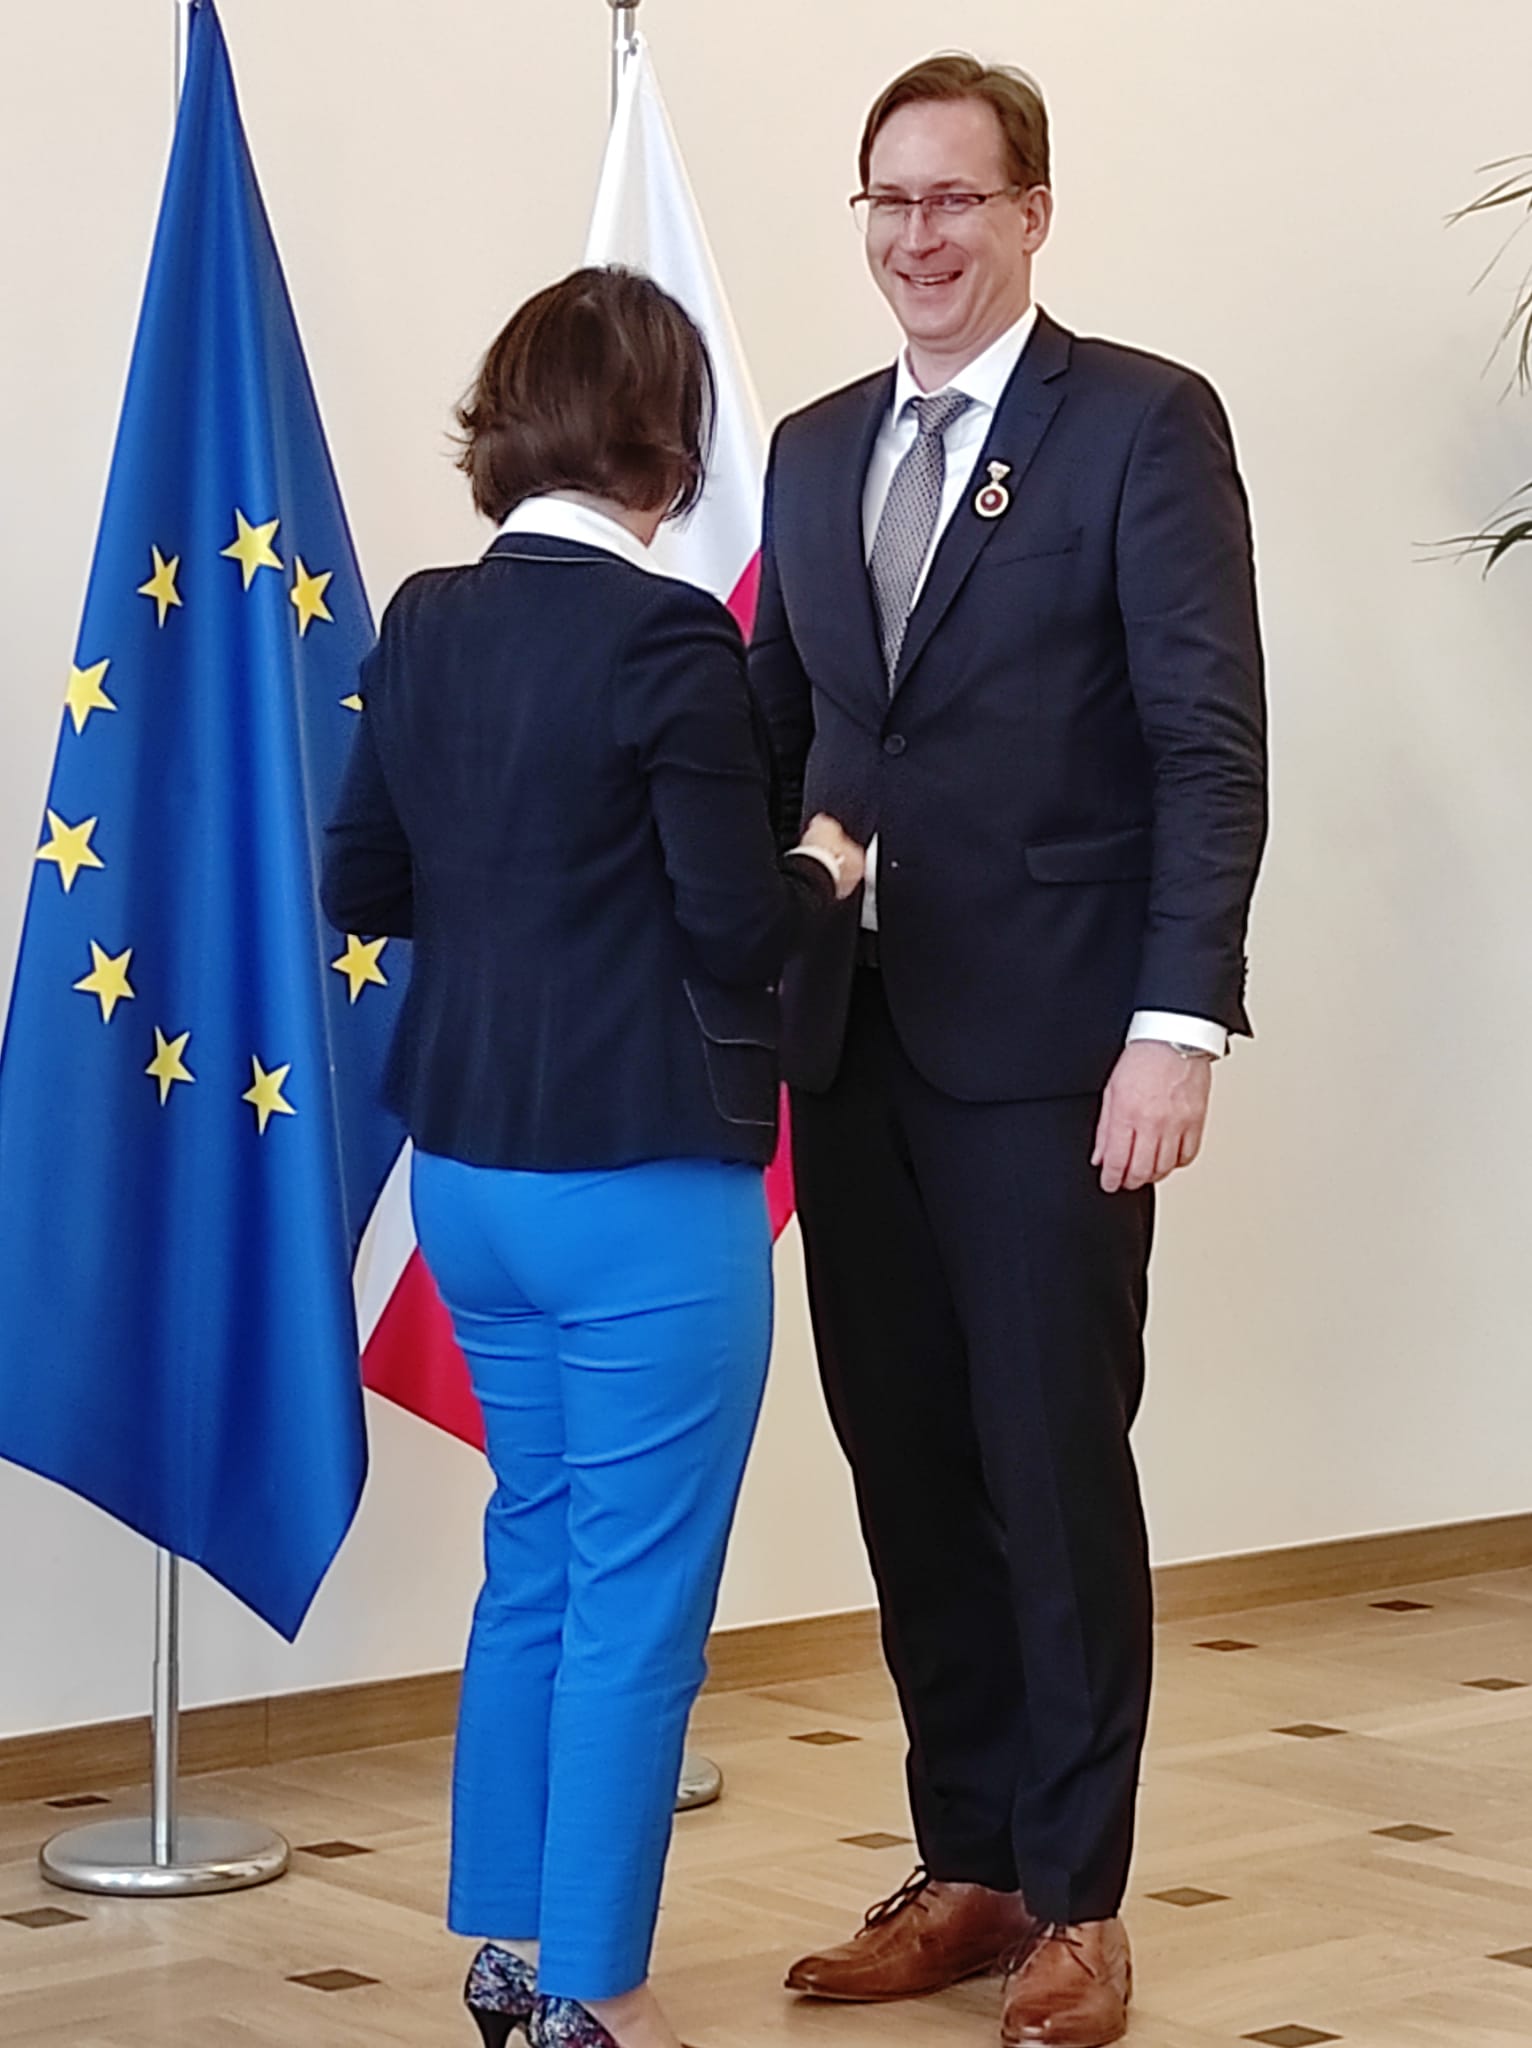 Uśmiechnięty mężczyzna ubrany w garnitur odbiera gratulacje od elegancko ubranej kobiety. Mężczyzna i kobieta stoją na tle flagi polski oraz Unii Europejskiej.